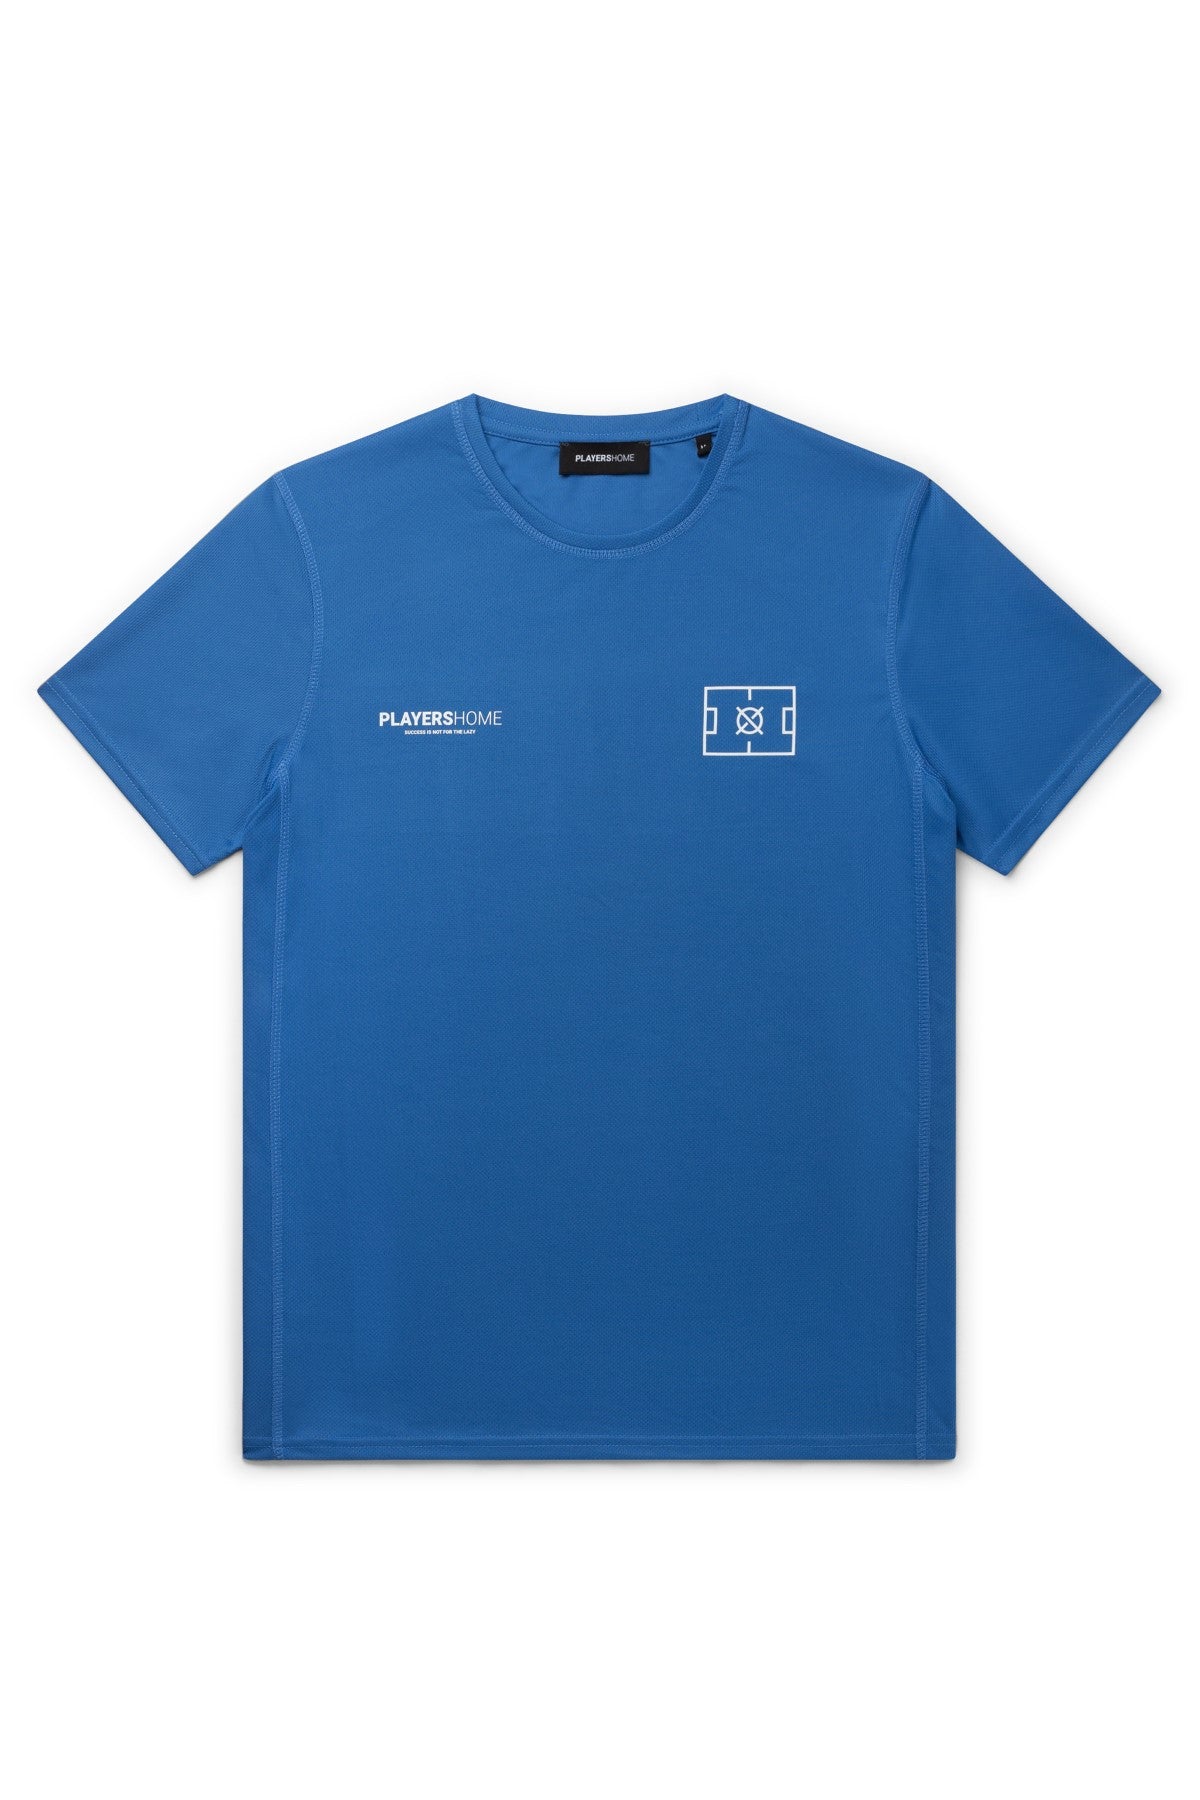 PLAYERHOME x TRUST T-Shirt - Blue